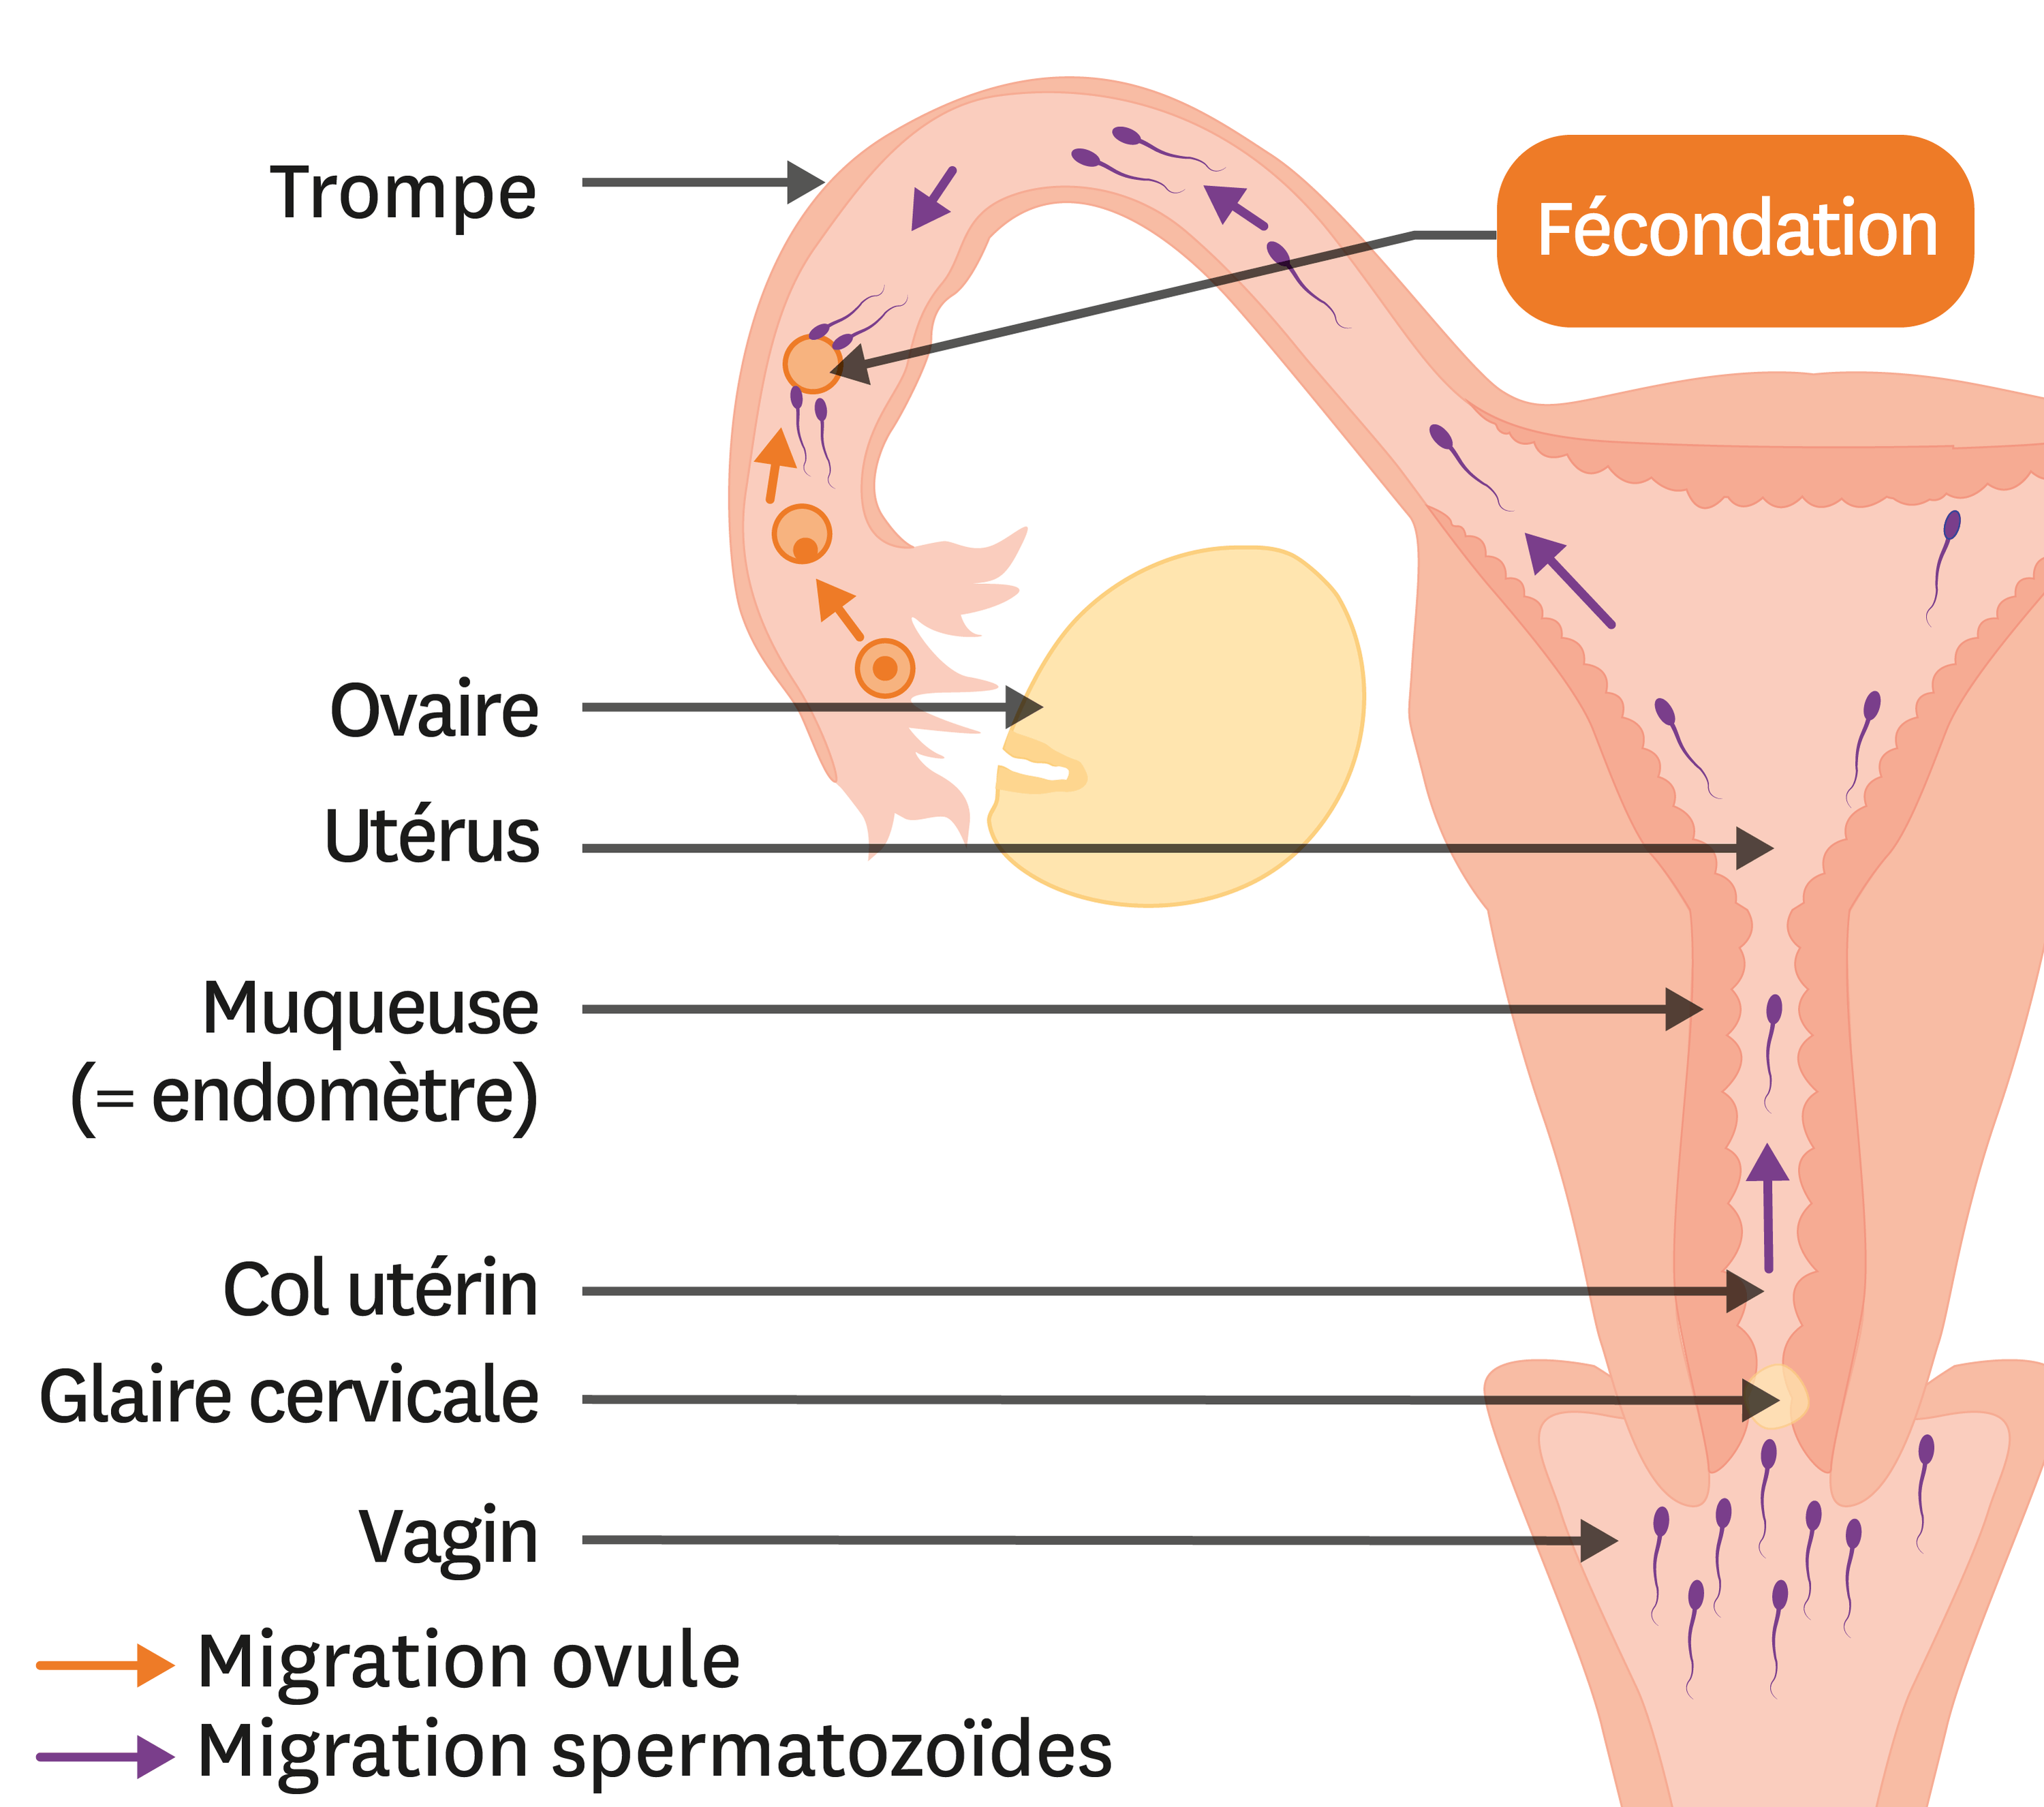 Fécondation : comment se passe la rencontre entre l'ovule et le spermatozoïde ?